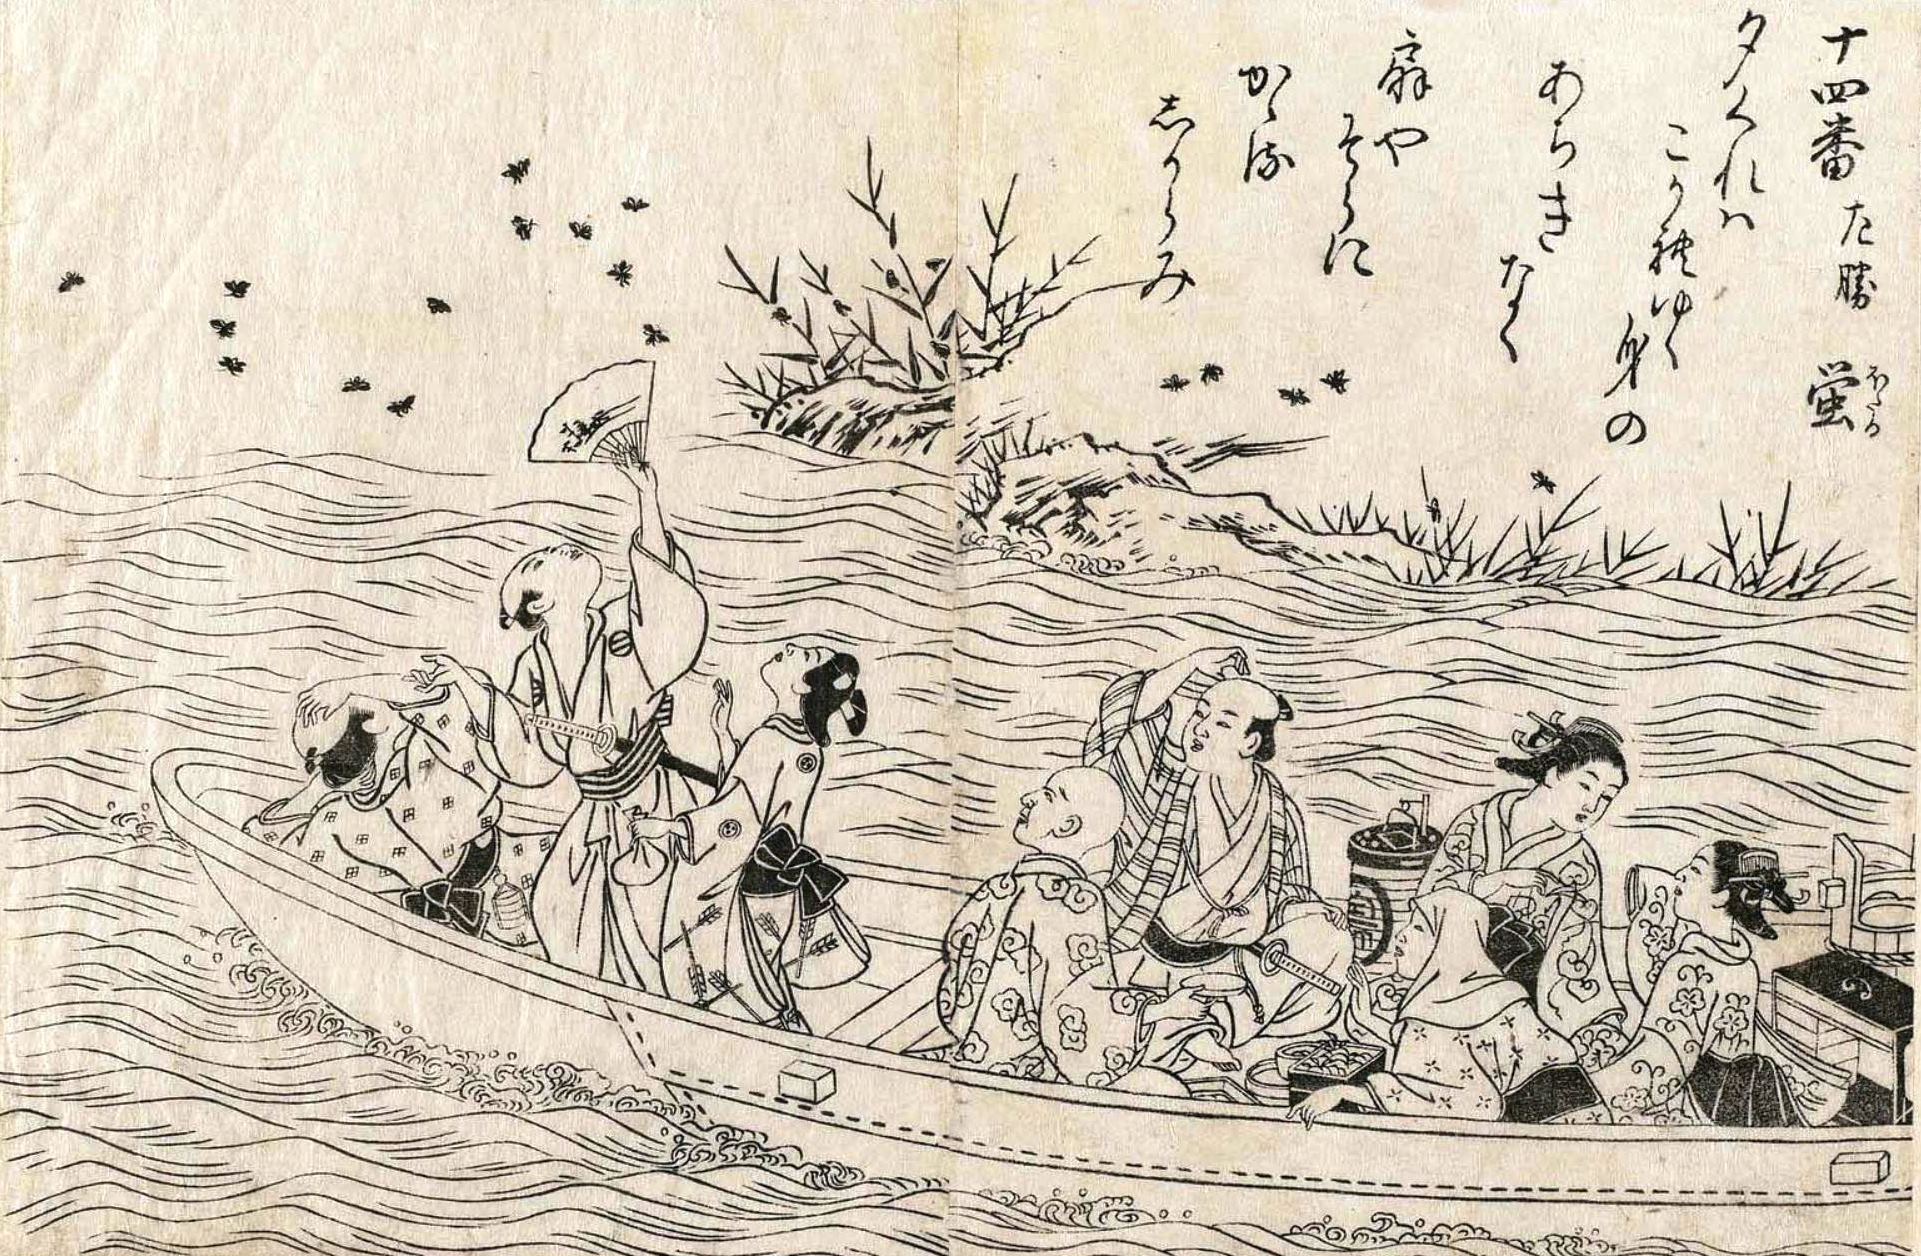 Нисикава Сукэнобу. "Общество в прогулочной лодке". 1759.